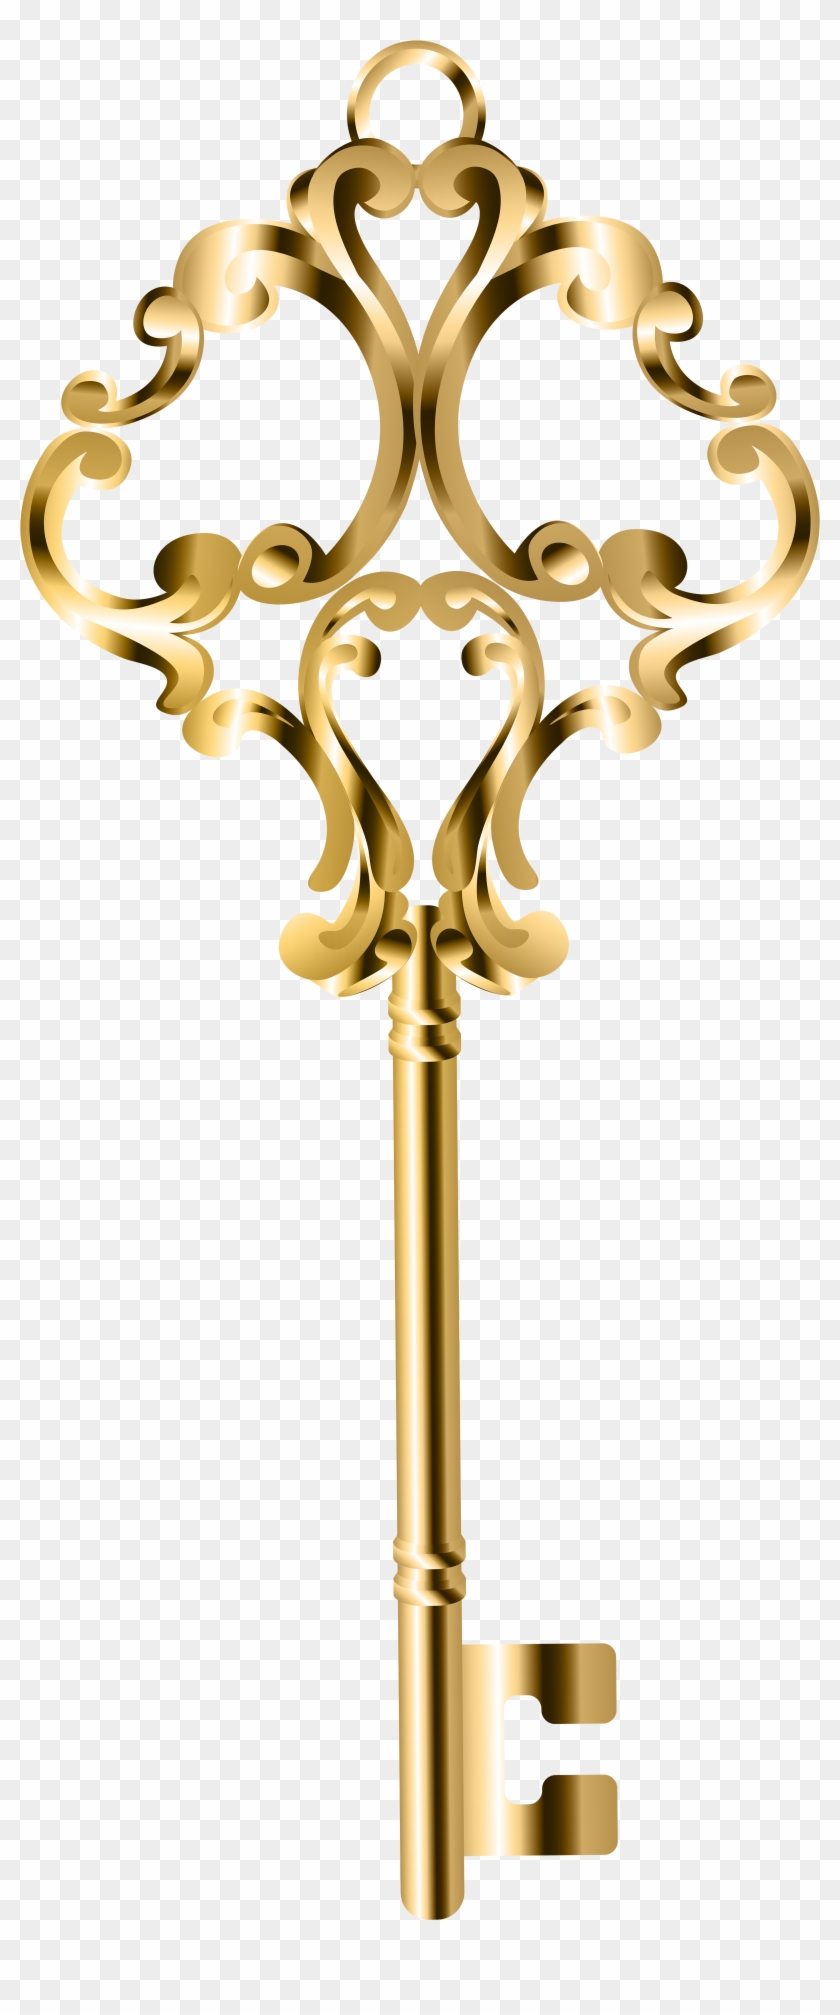 Golden Key Png Clip Art - Gold Key Png Clip #282089